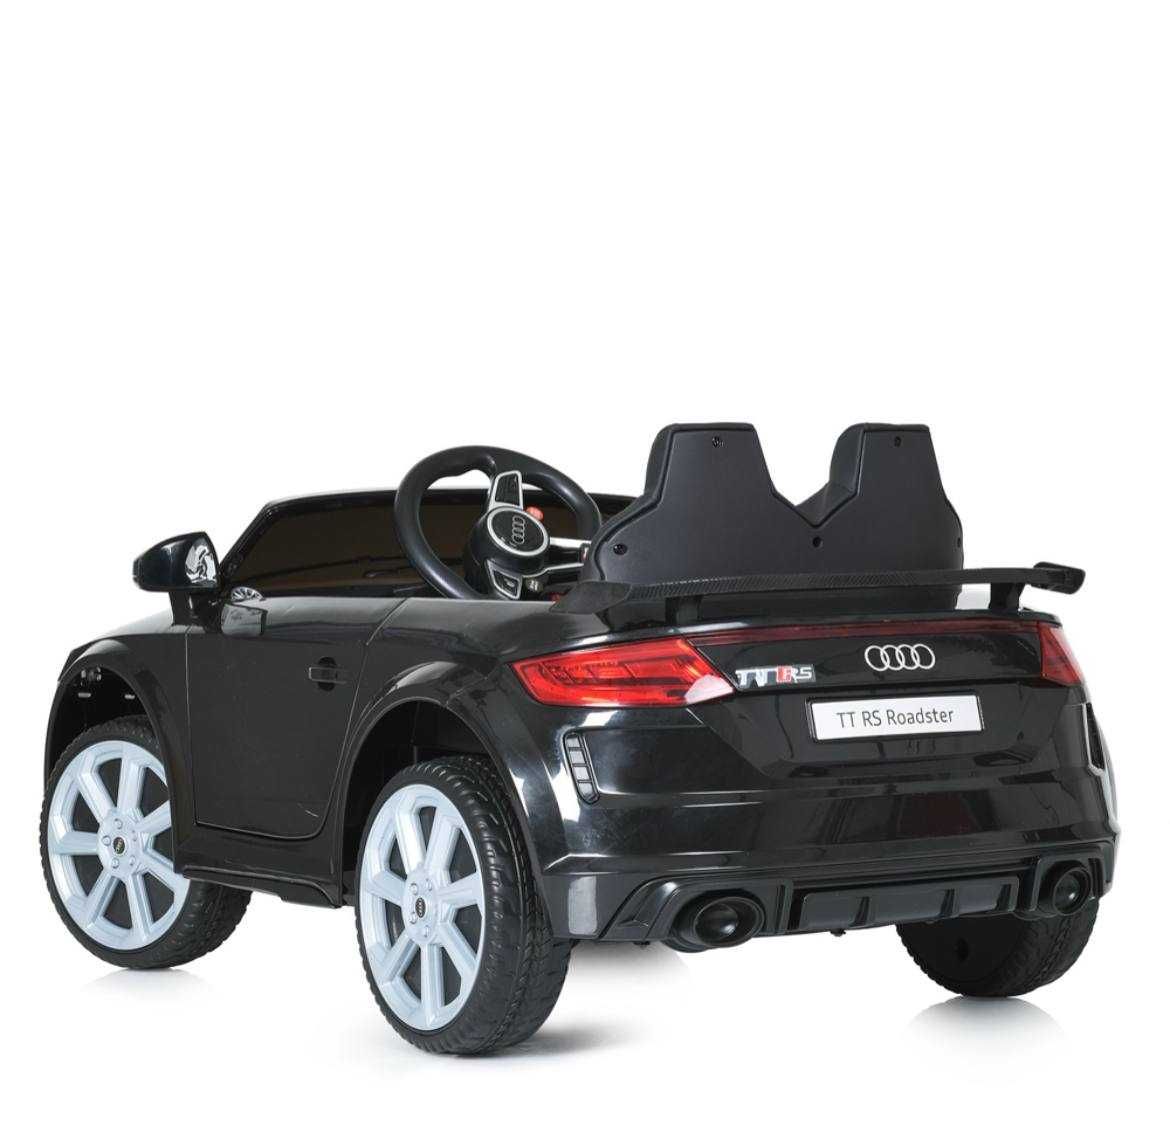 Детский электромобиль Audi